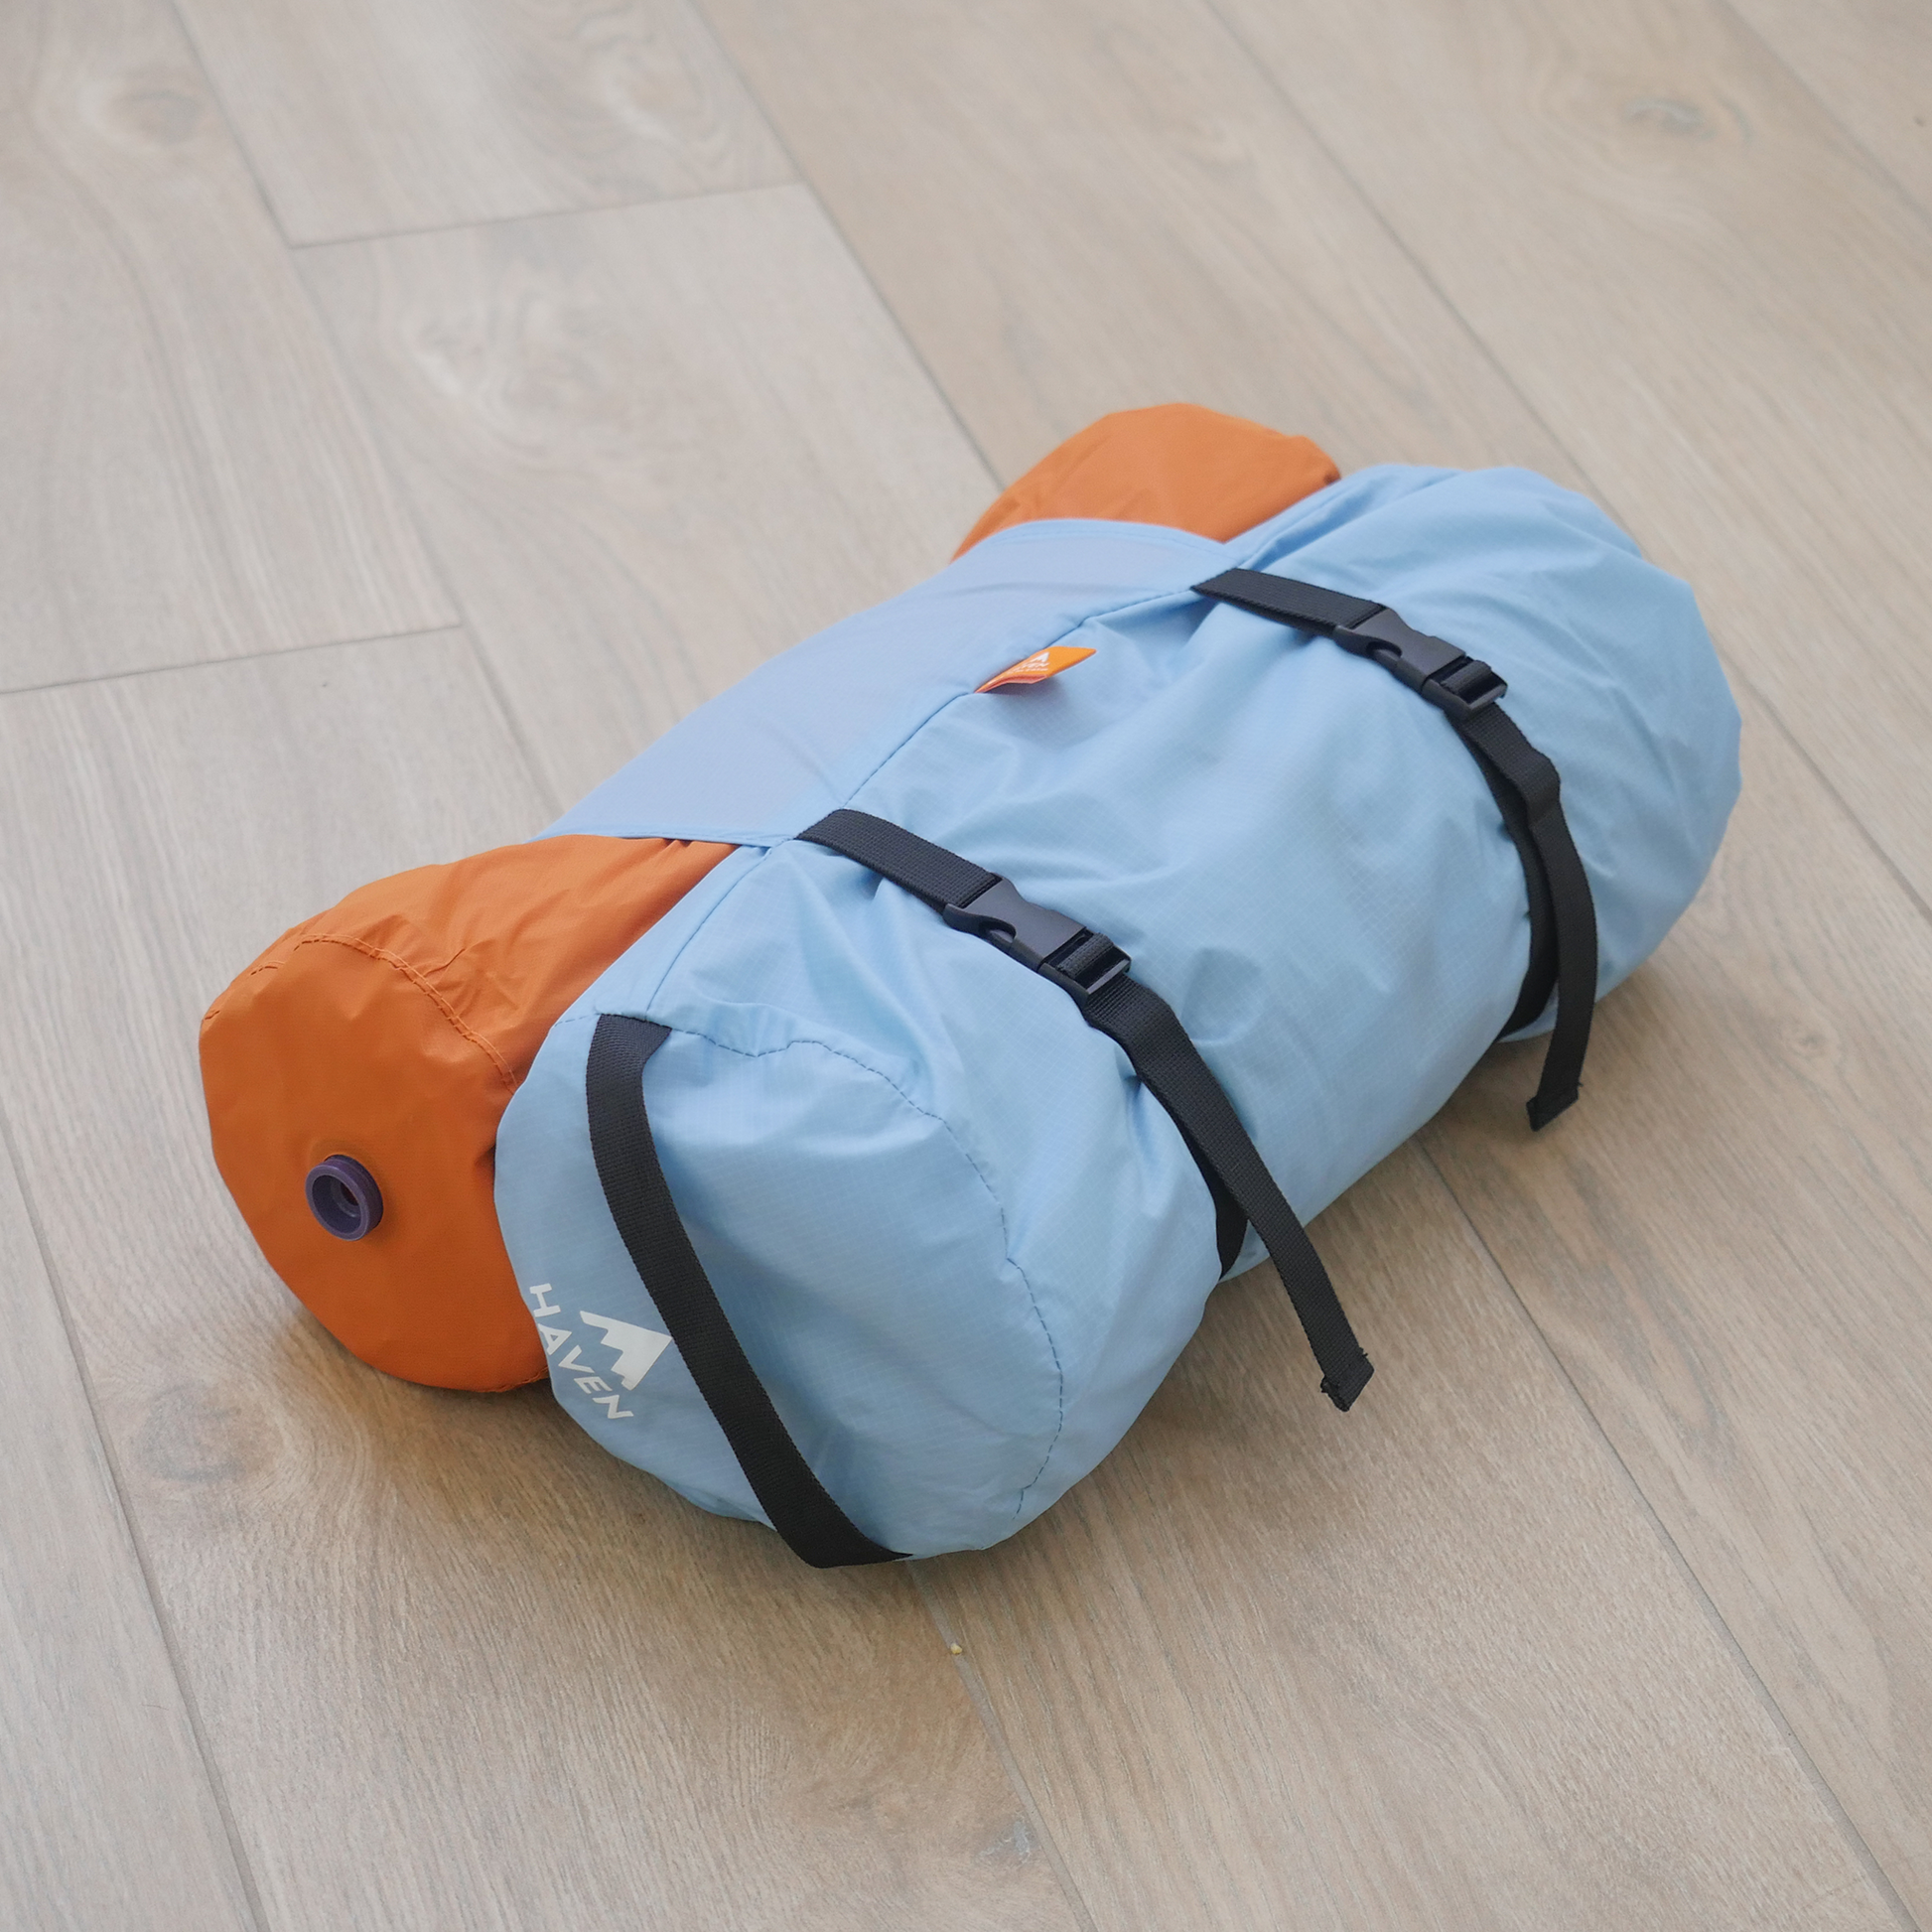 Portable camping hammock kit 